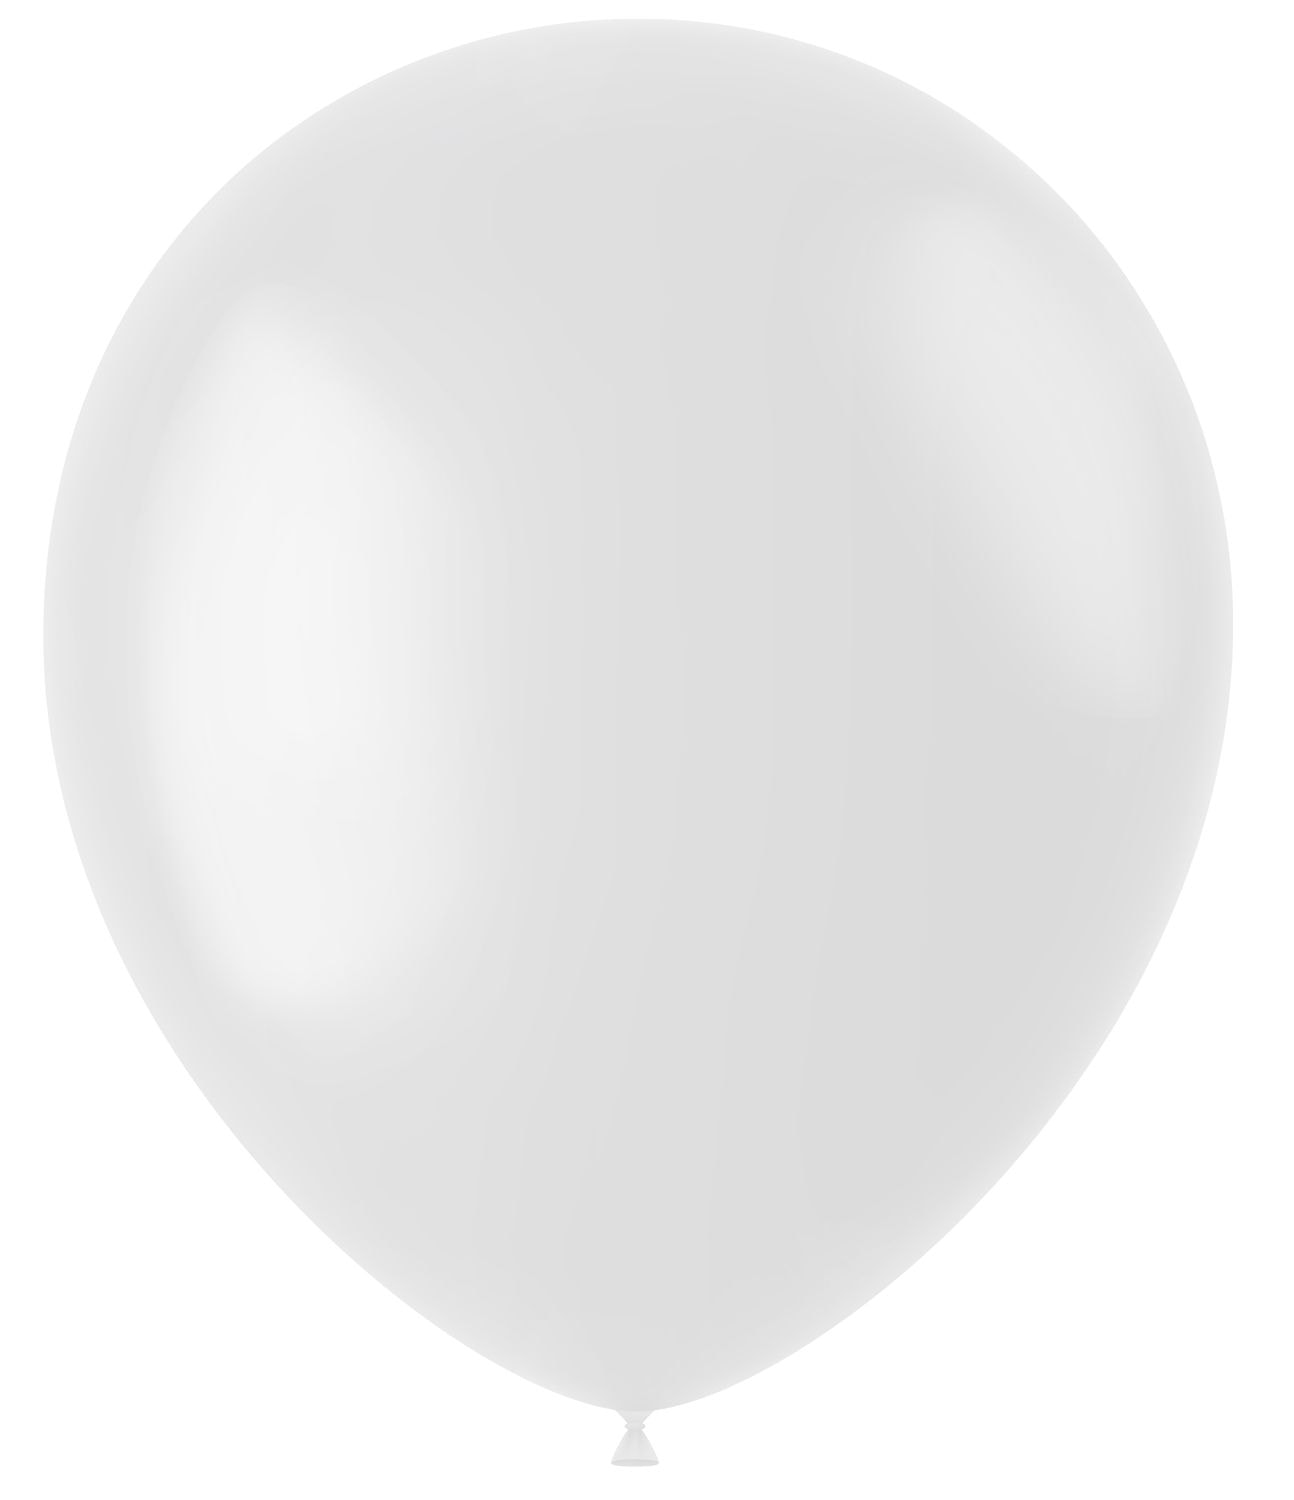 Witte ballonnen matte kleur